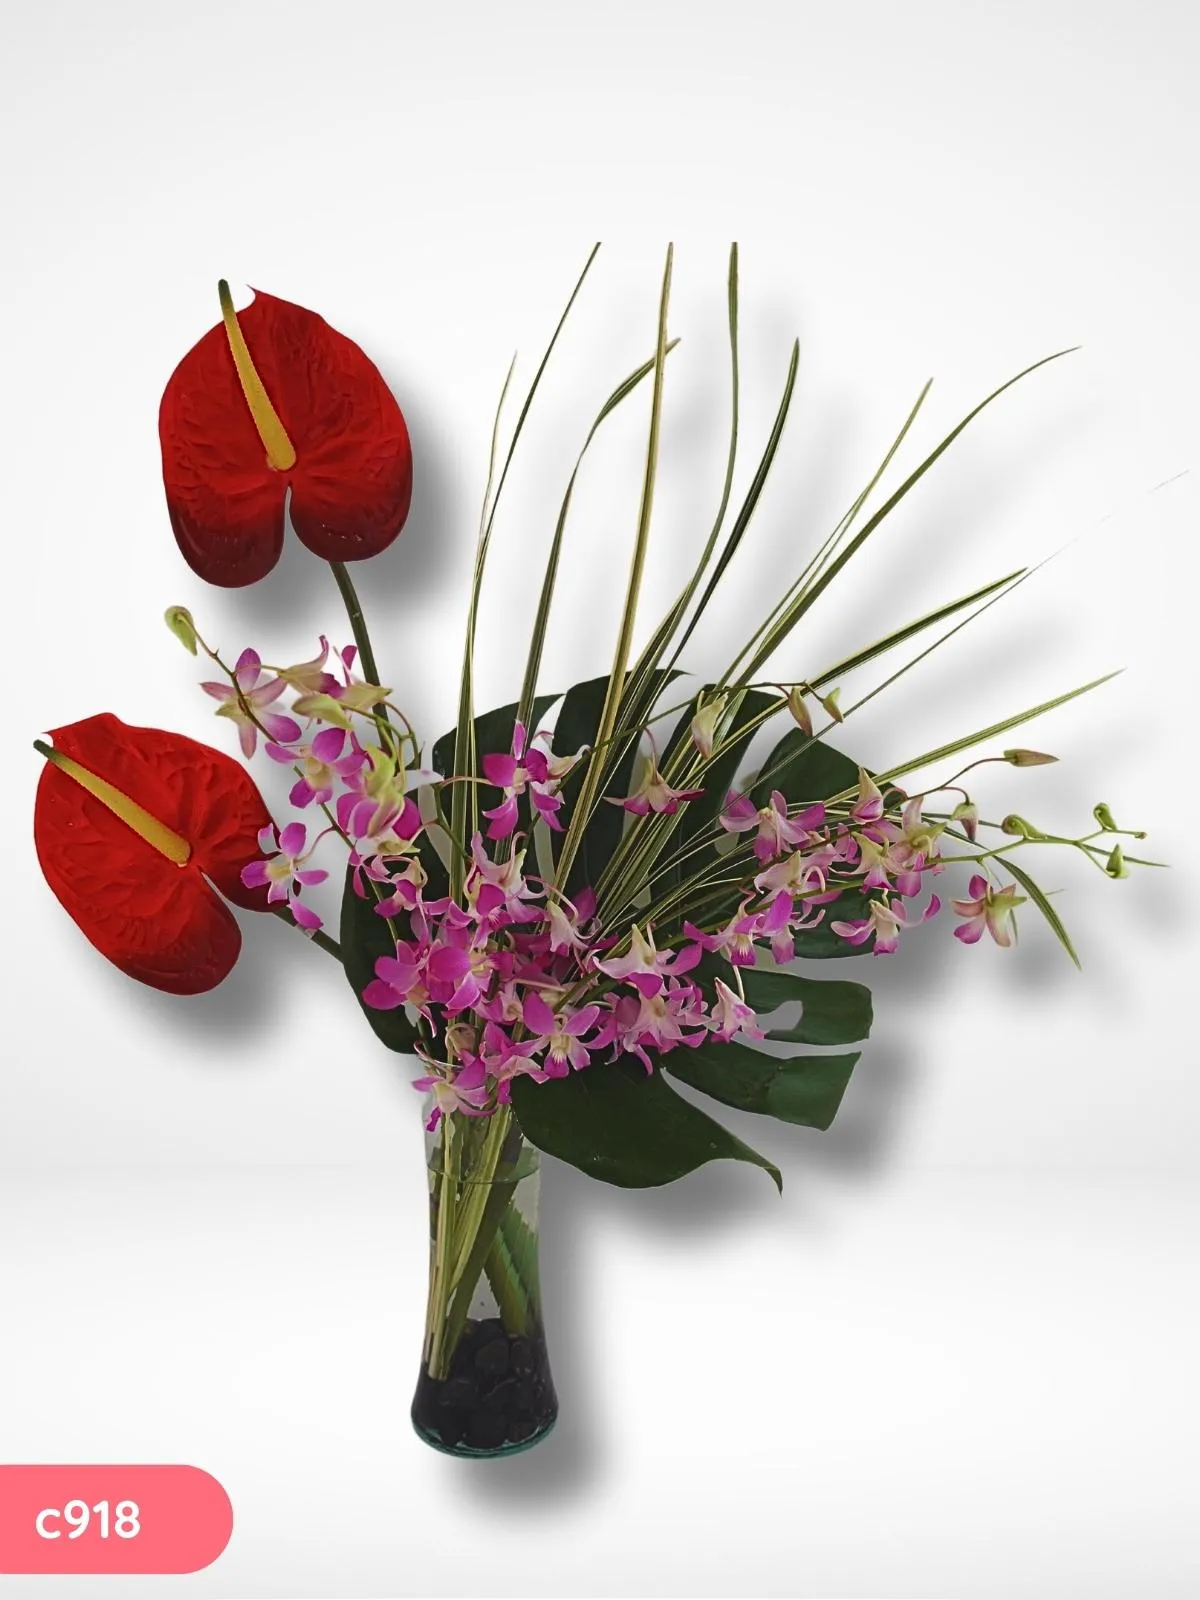 Enviar Flores a Mexico Orquidea Bombay Lilac !